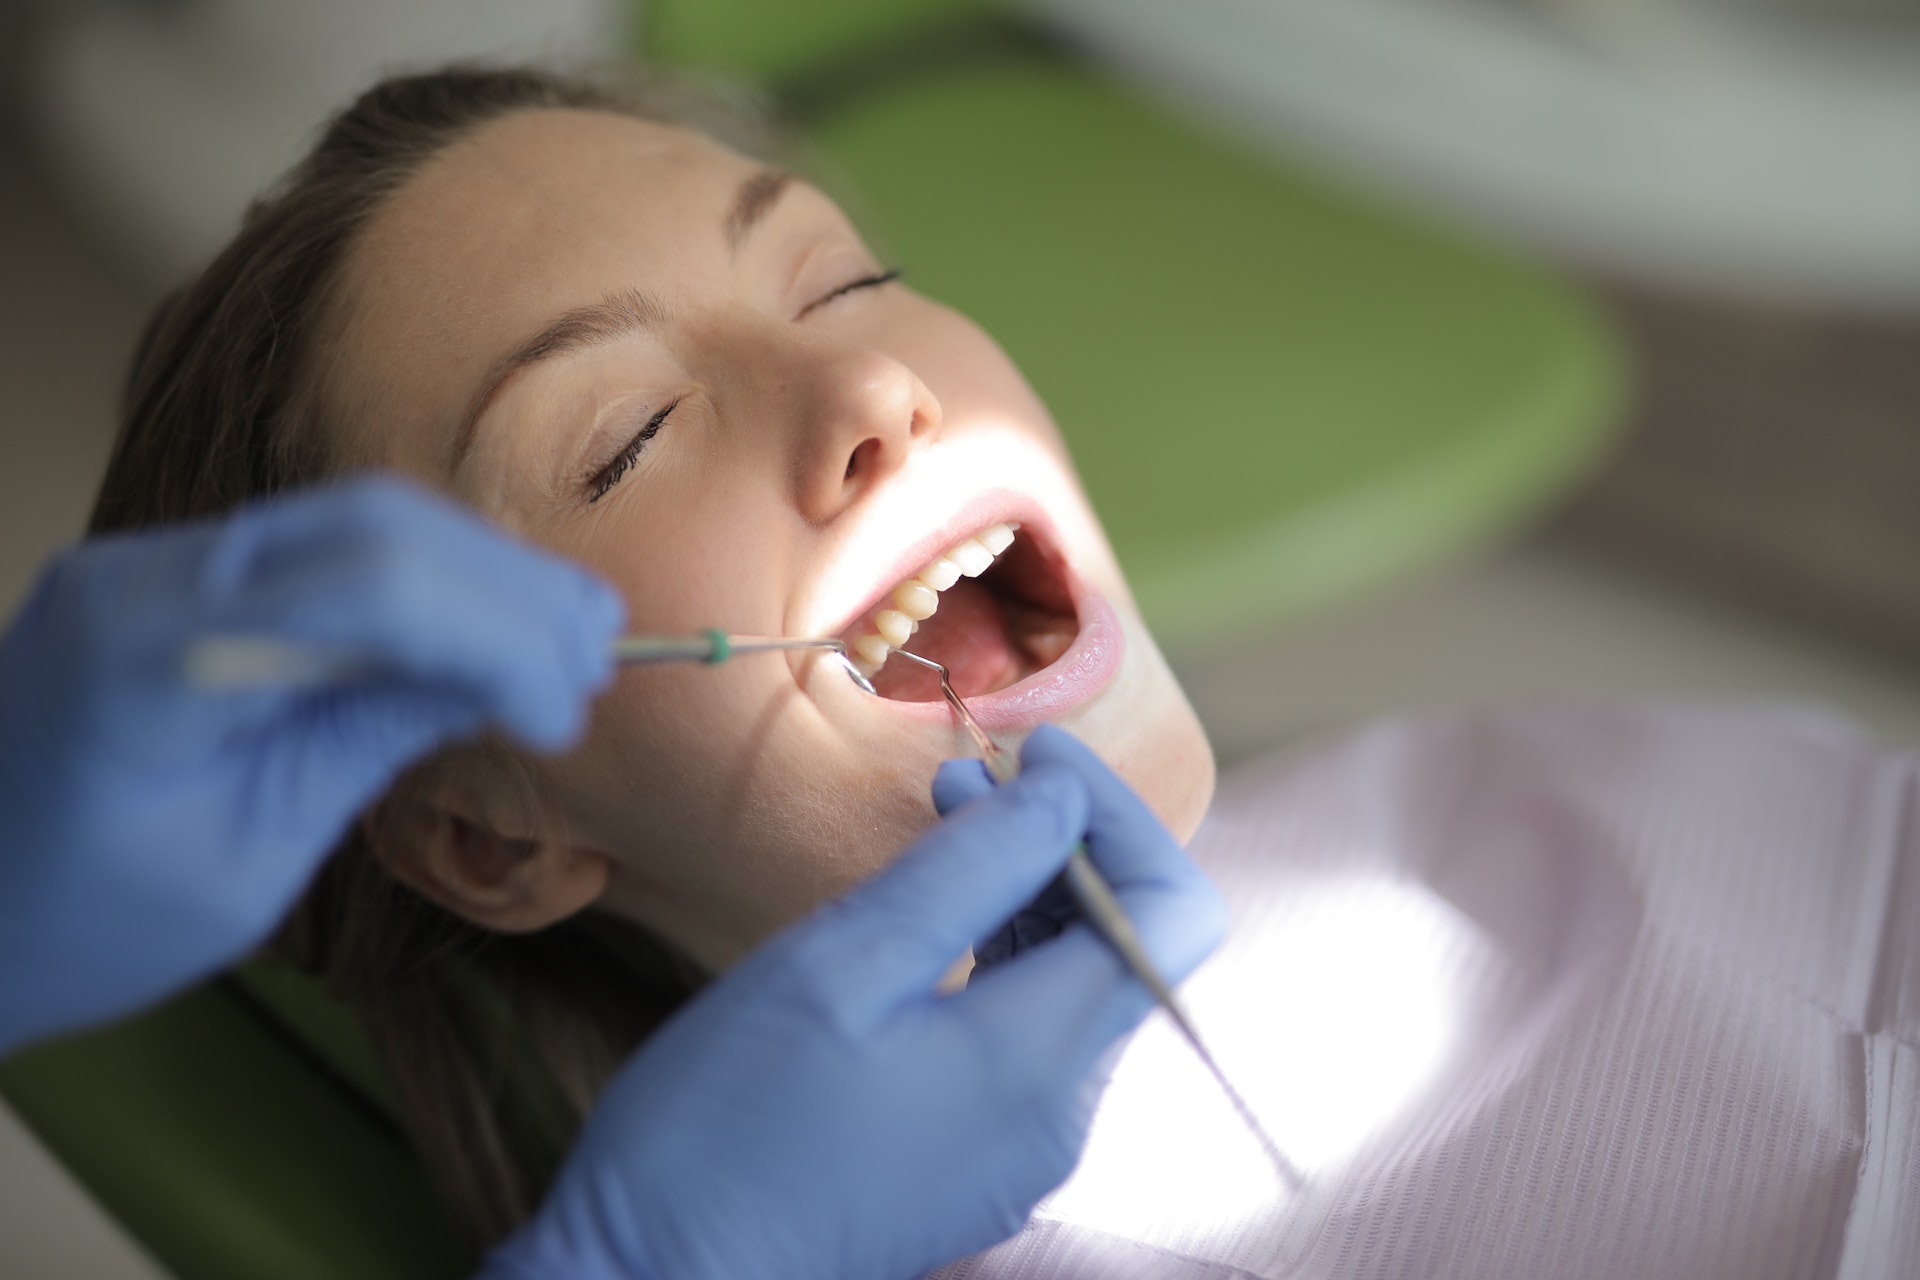 Implanty zębowe a piękny uśmiech